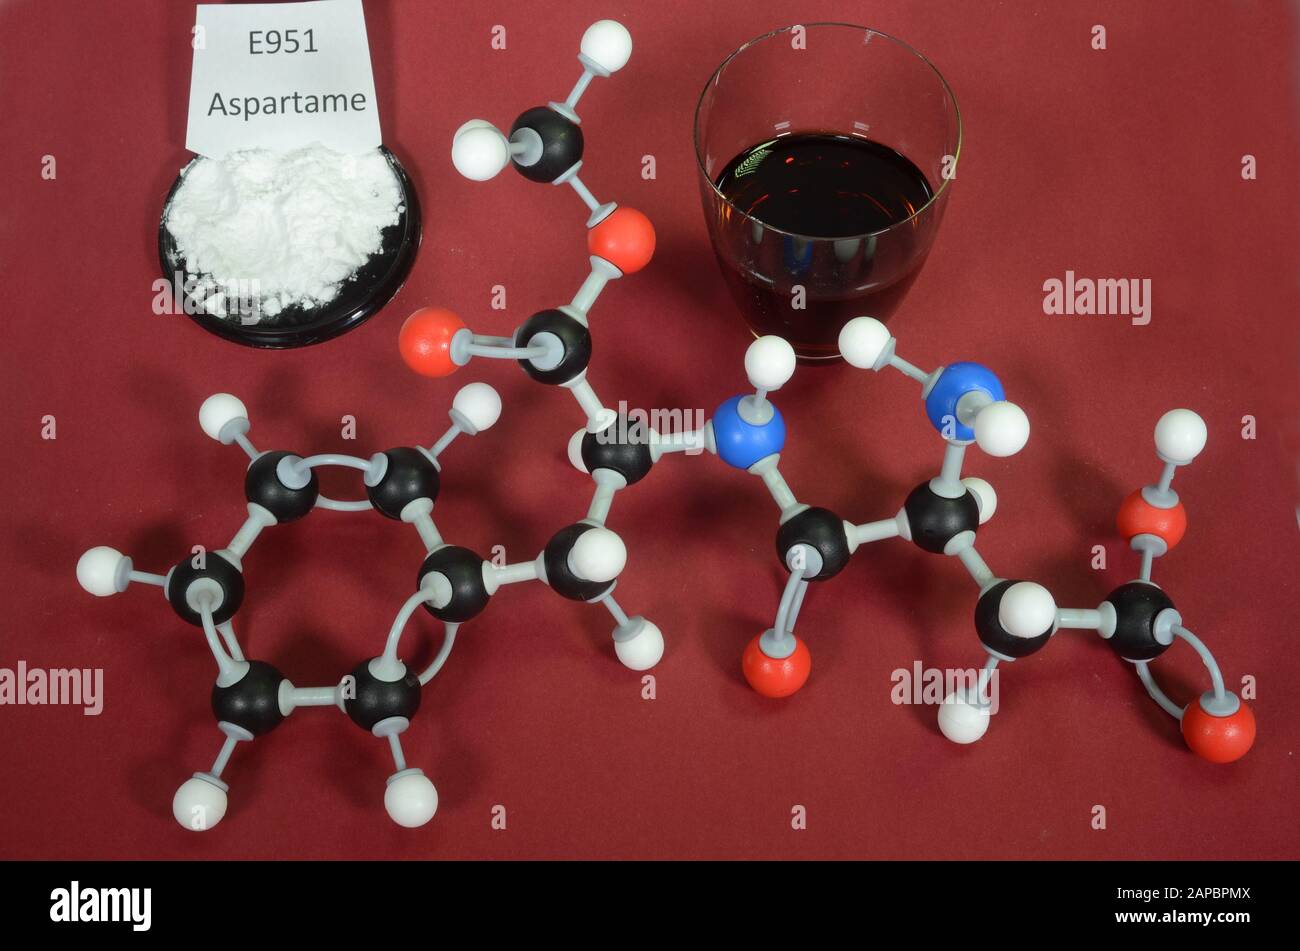 Molekularmodell von Aspartam ein umstrittener künstlicher Süßstoff mit zugehörigen Proben. Weiß ist Wasserstoff, Schwarz ist Kohlenstoff, Rot ist Sauerstoff und Blau i Stockfoto